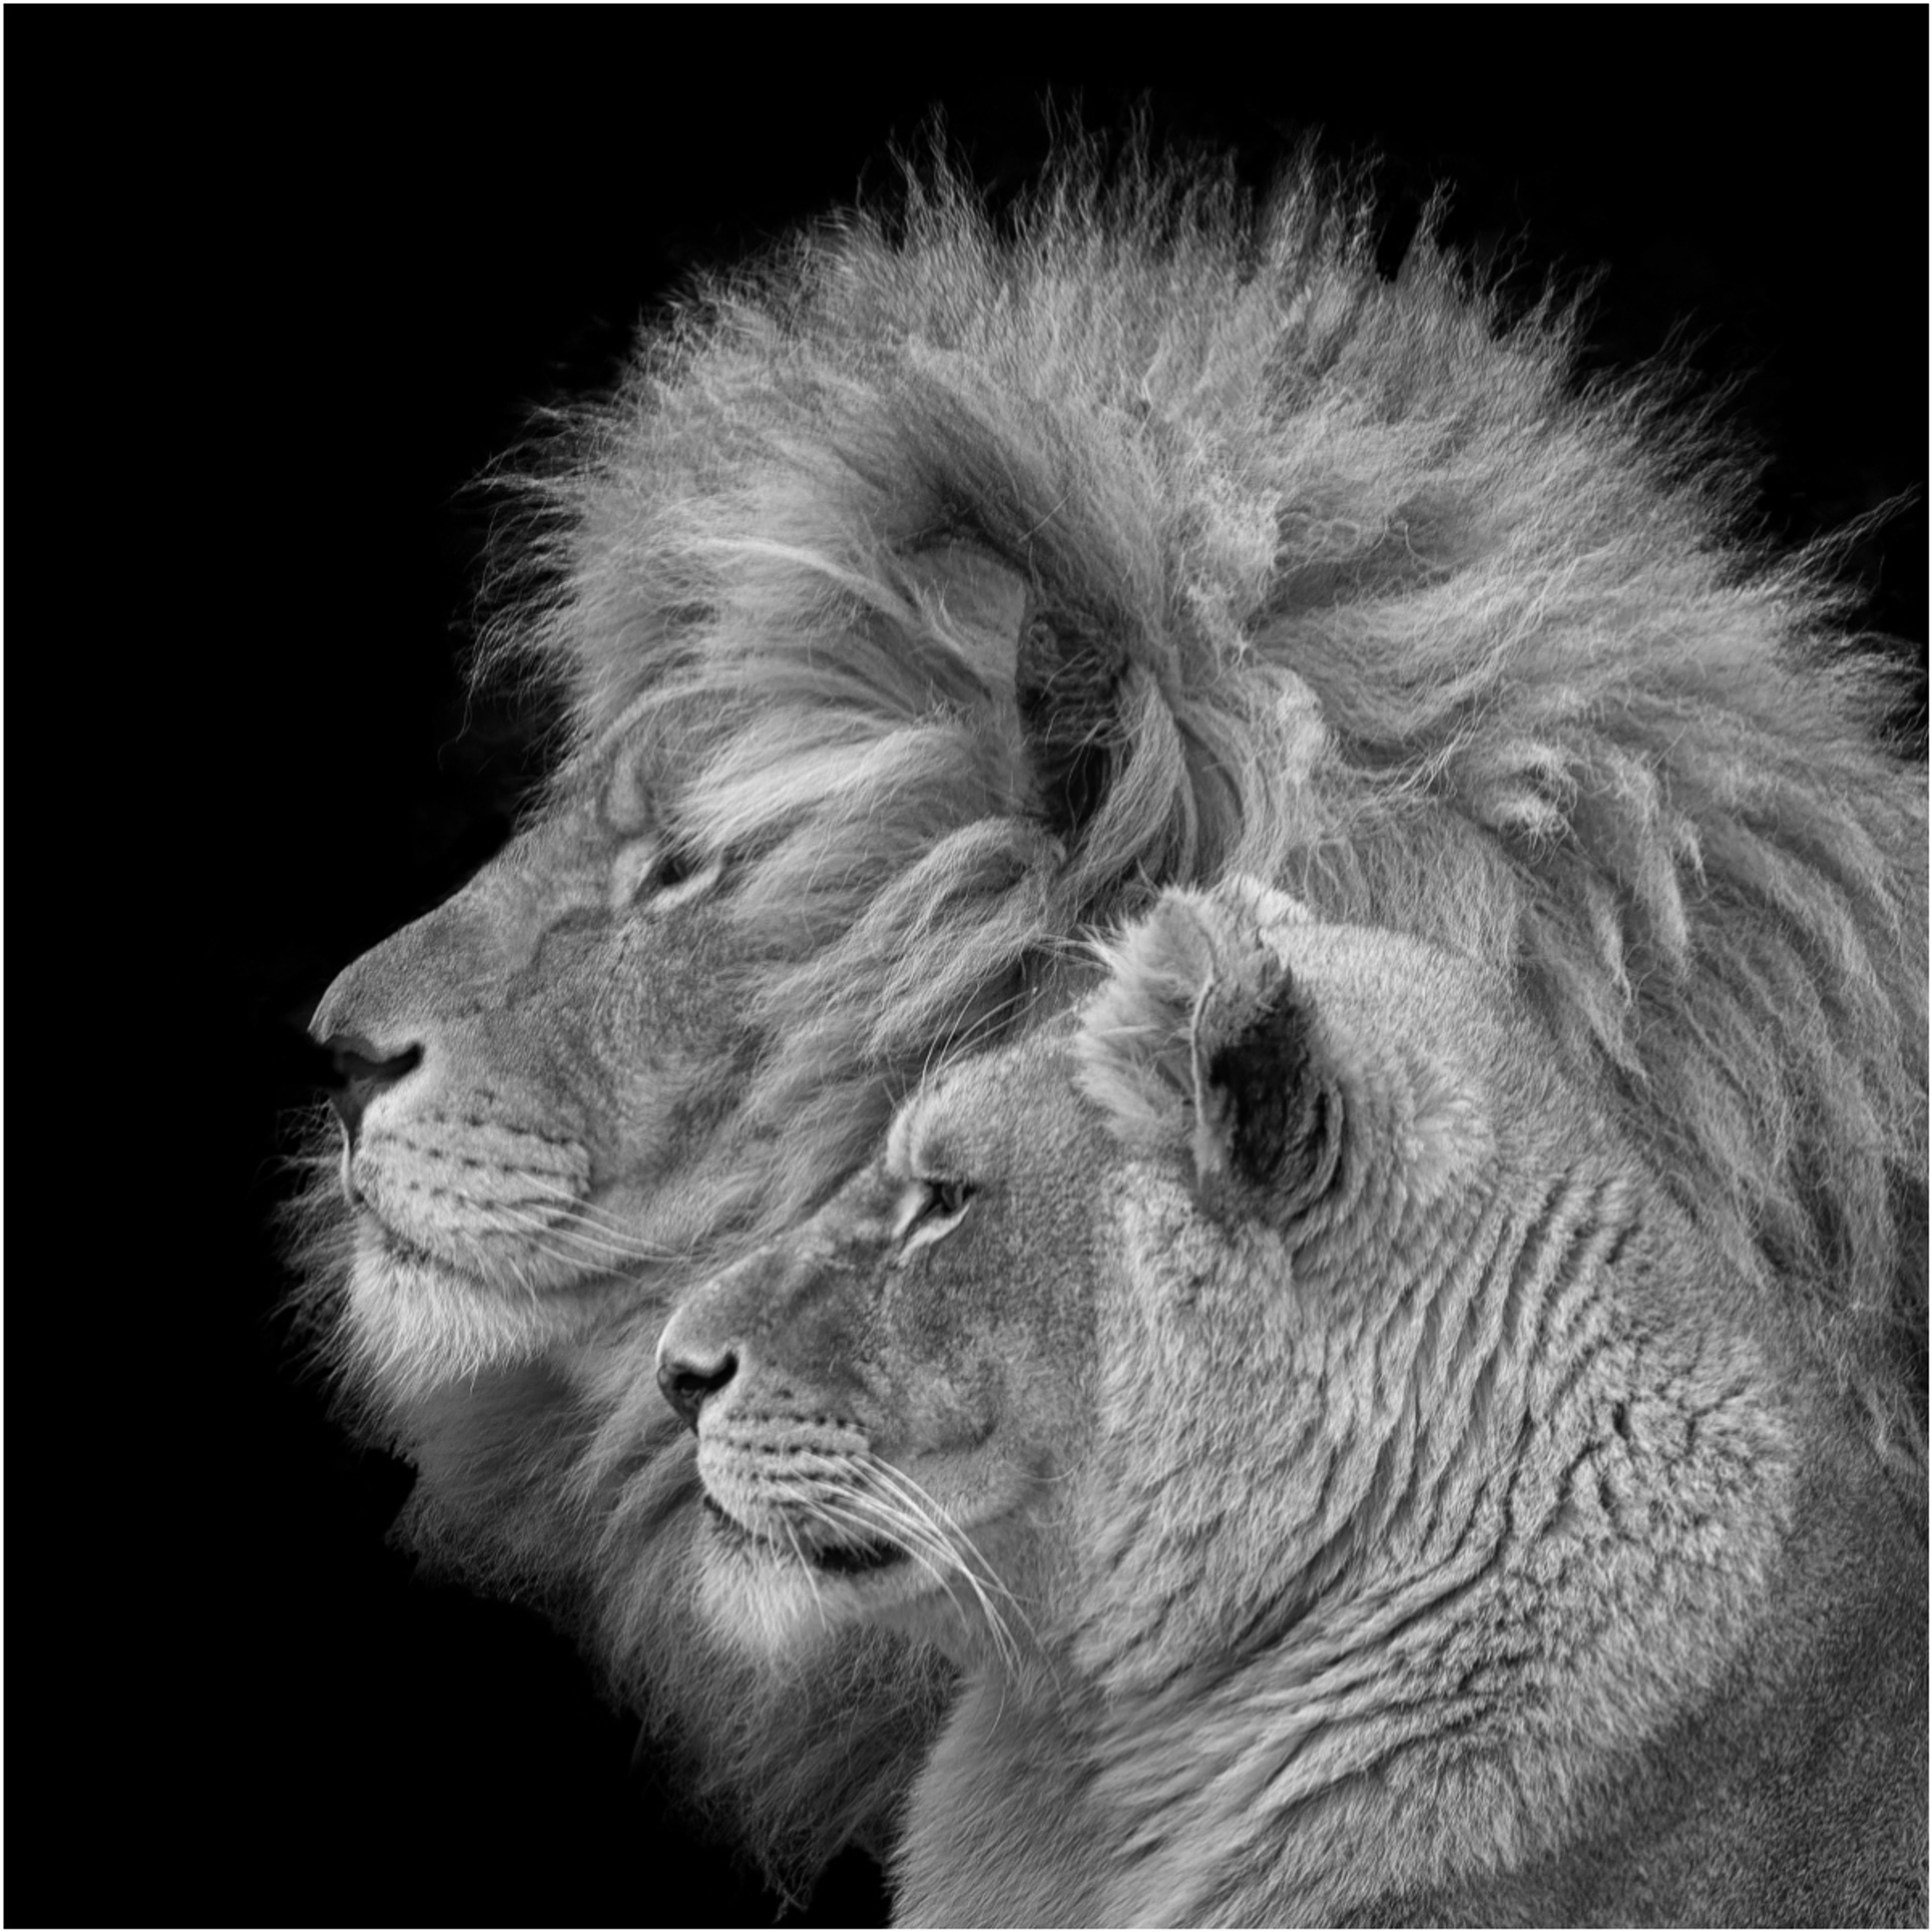 Lion Portrait by Steve Gray